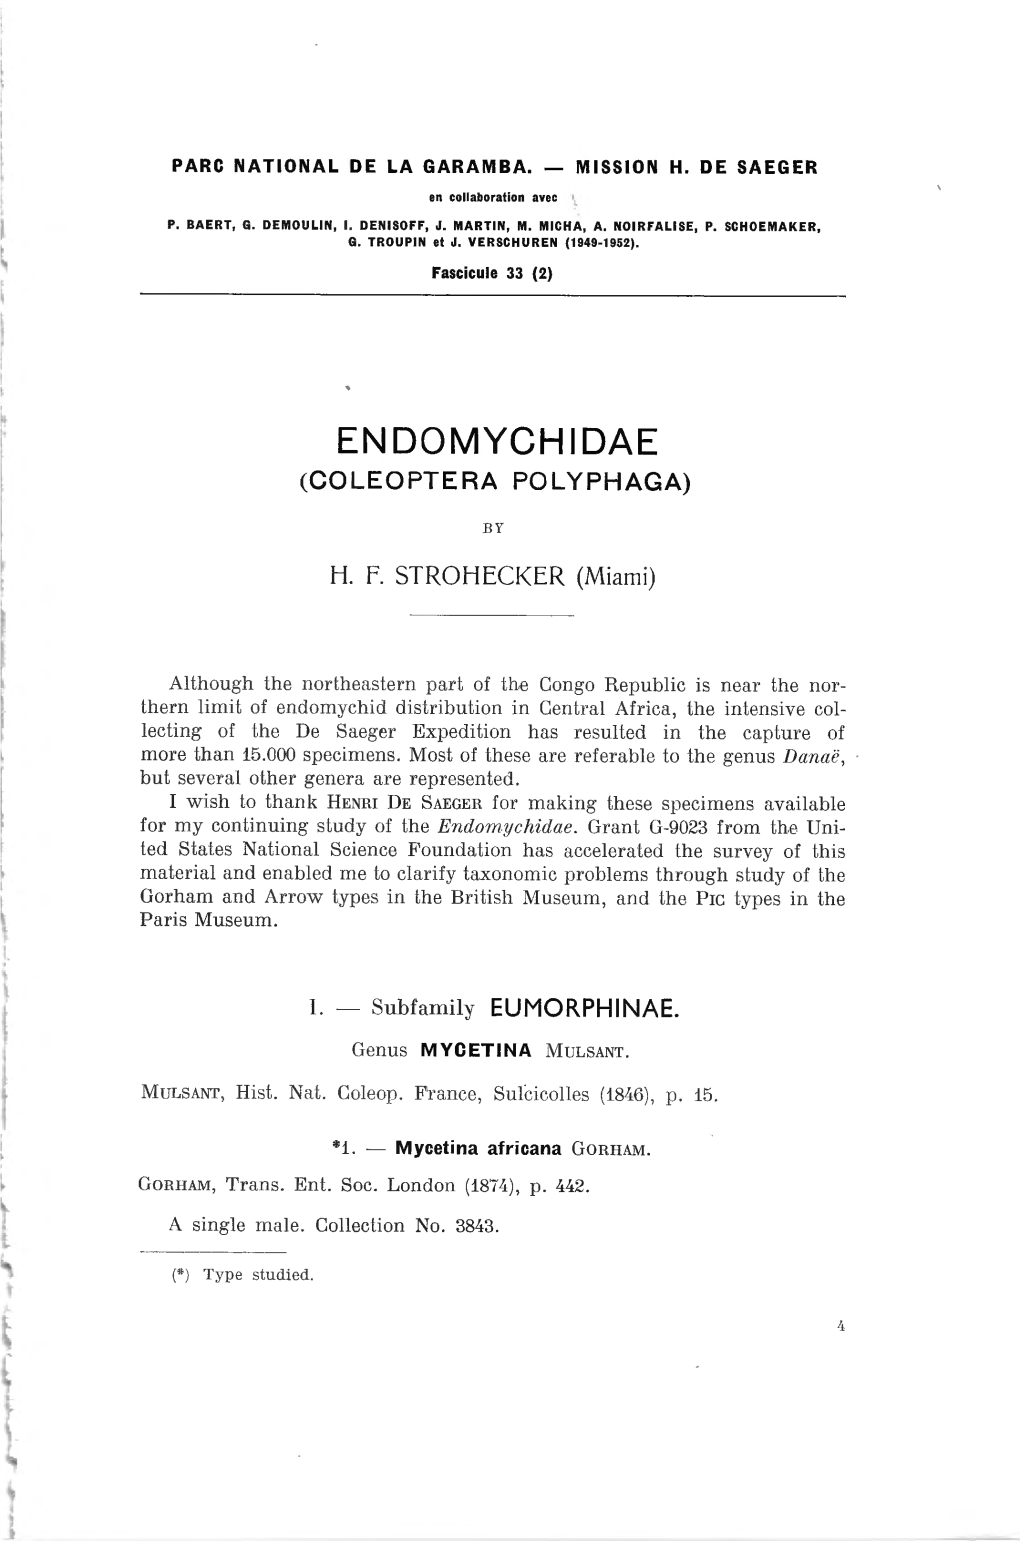 Endomychidae (Coleoptera Polyphaga)